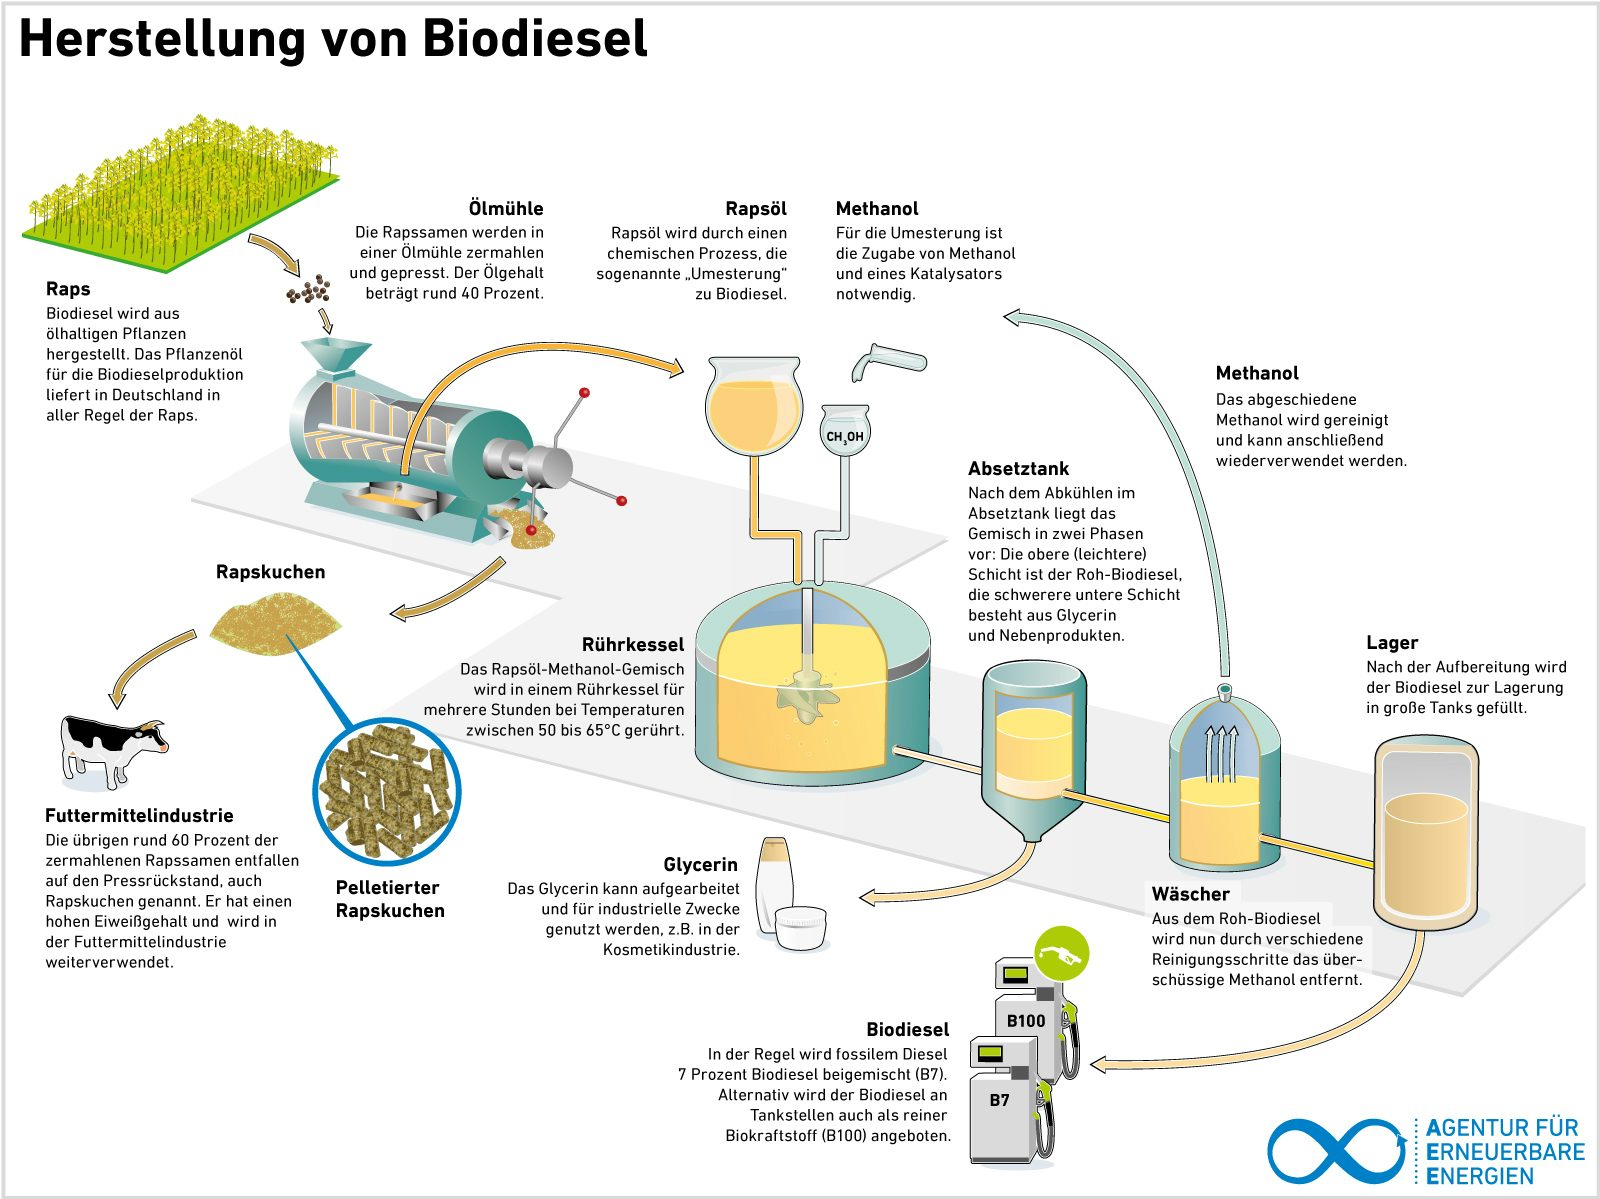 AEE_Herstellung_von_Biodiesel_Mai15